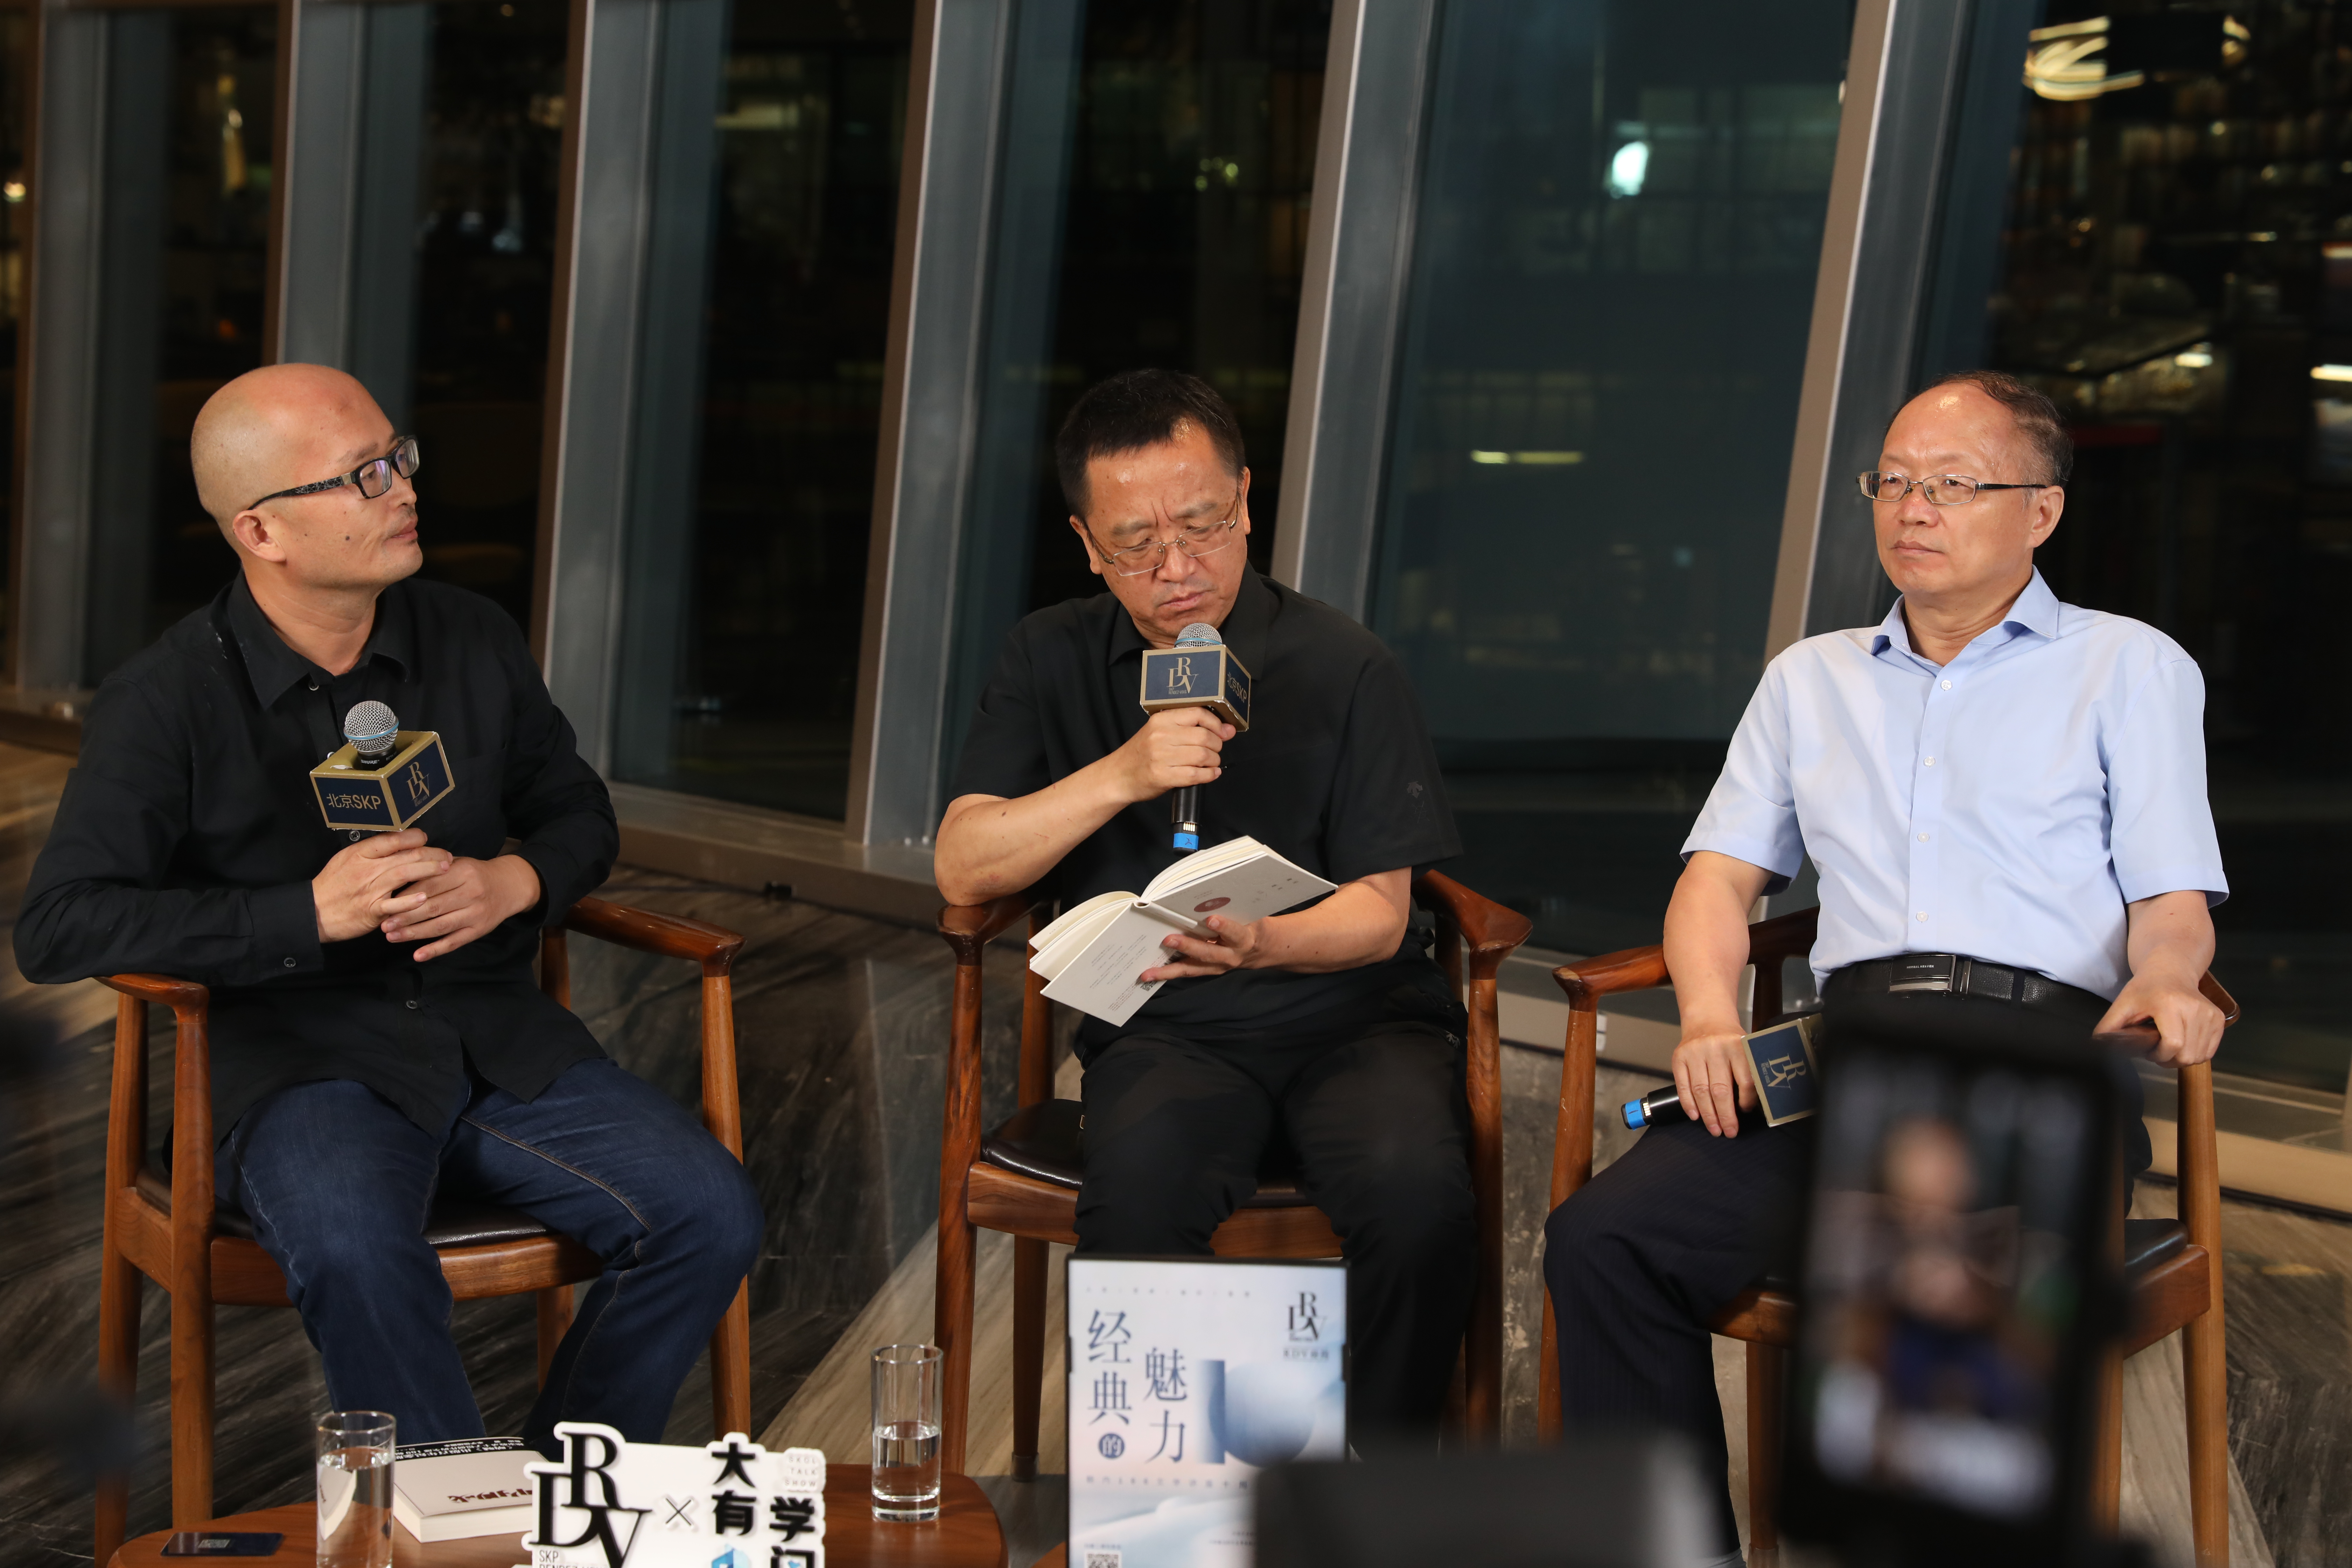 以文学为媒 “朝内166文学讲座十周年纪念活动”在京举办